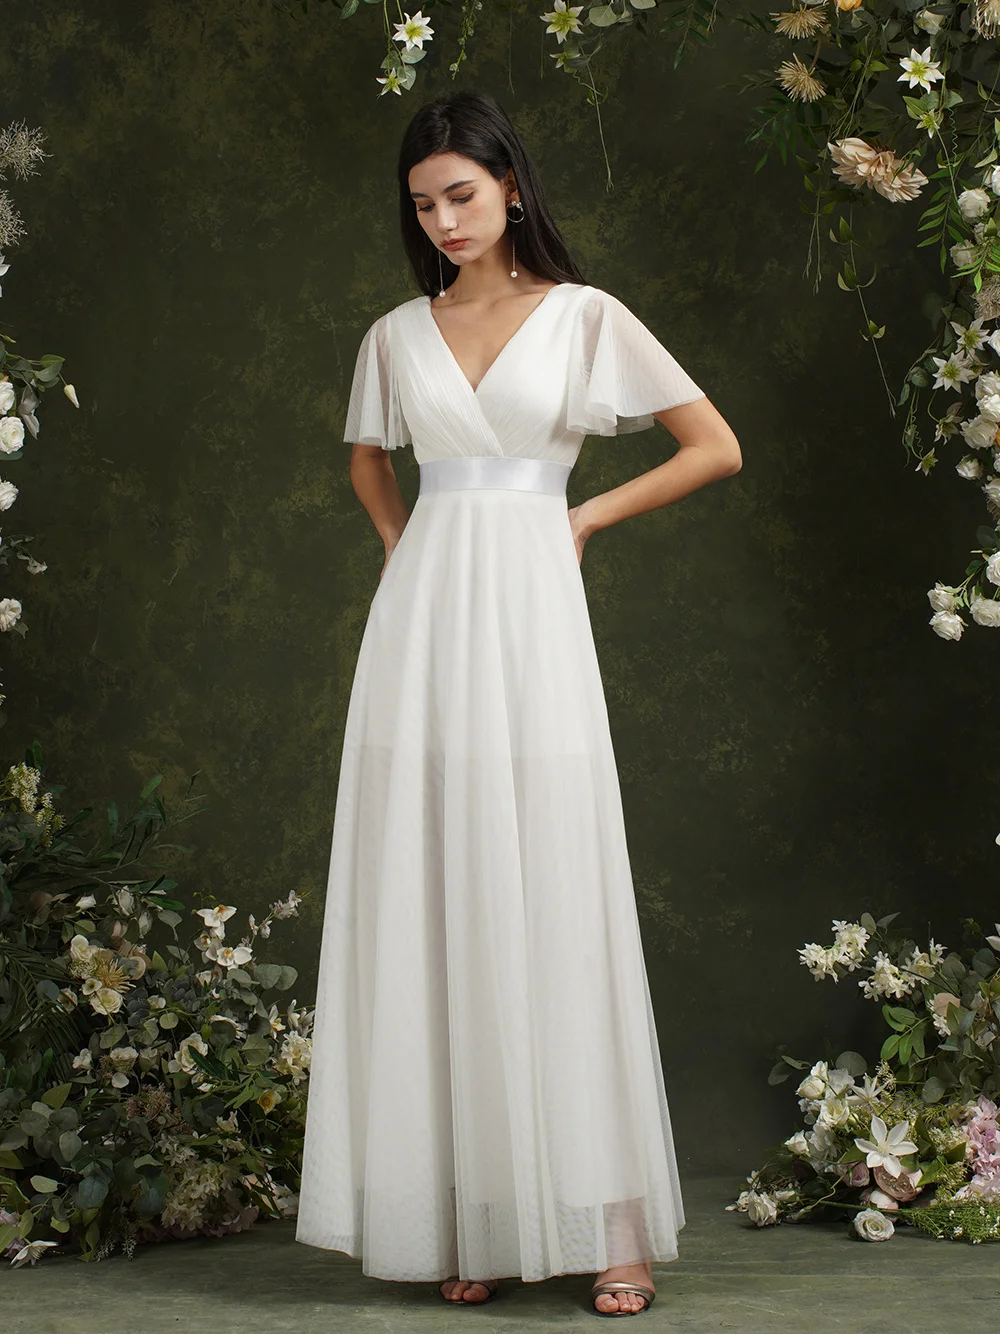 Женское летнее платье MisShow, белое шифоновое платье с расклешенными рукавами, классическое плиссированное платье с бюстом, атласные ленты, Д... от AliExpress RU&CIS NEW